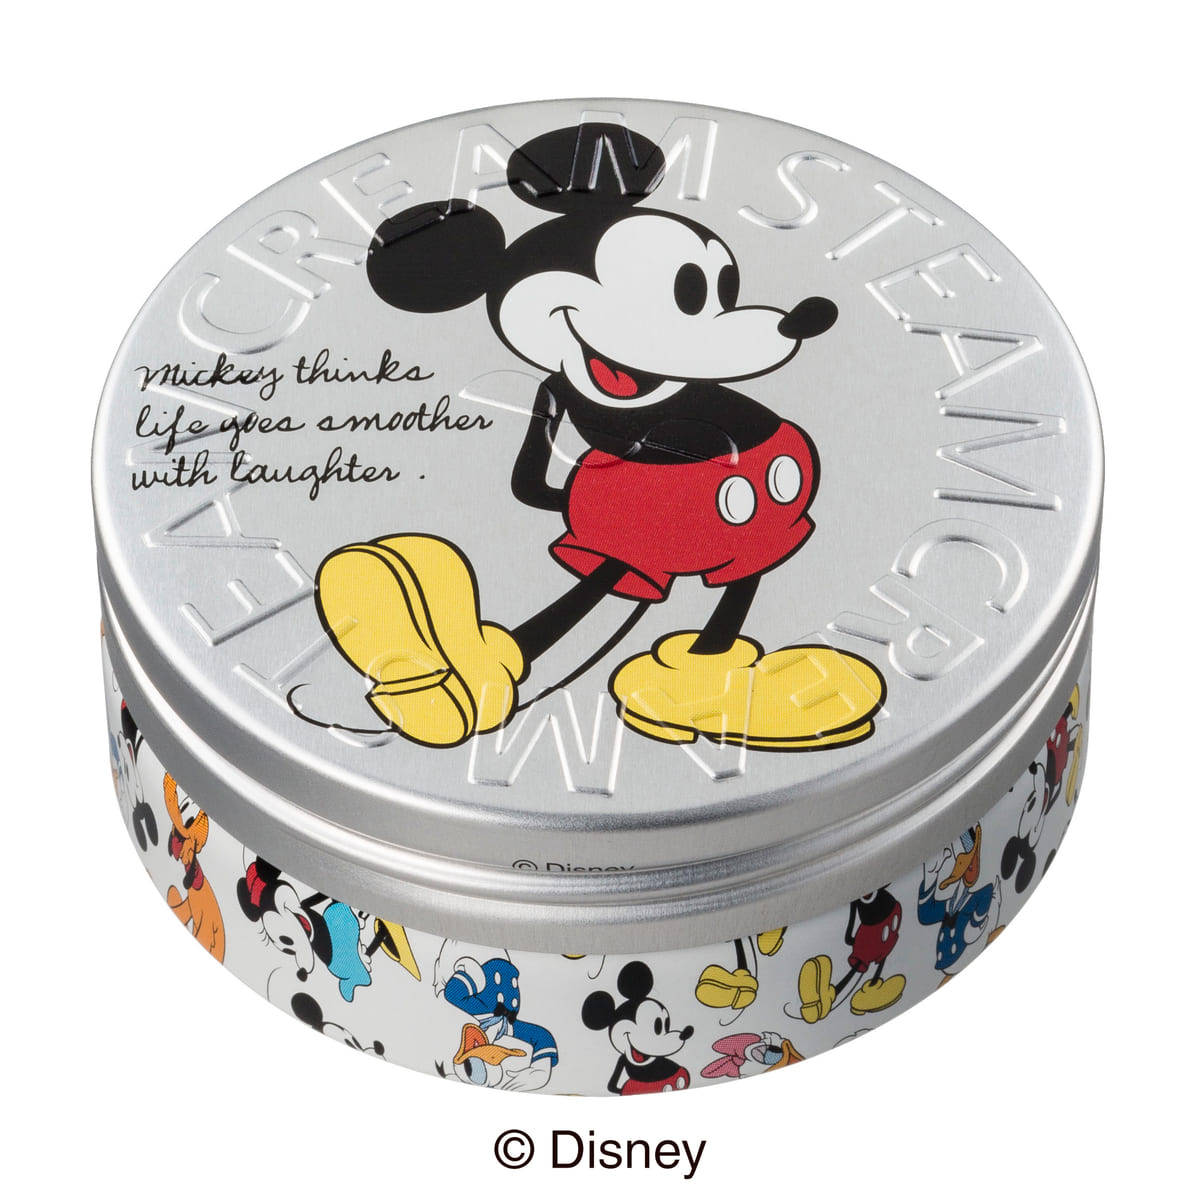 ミッキーマウスと おしゃれキャット のマリーが復刻版として登場 スチームクリーム ディズニー デザイン缶 Dtimes